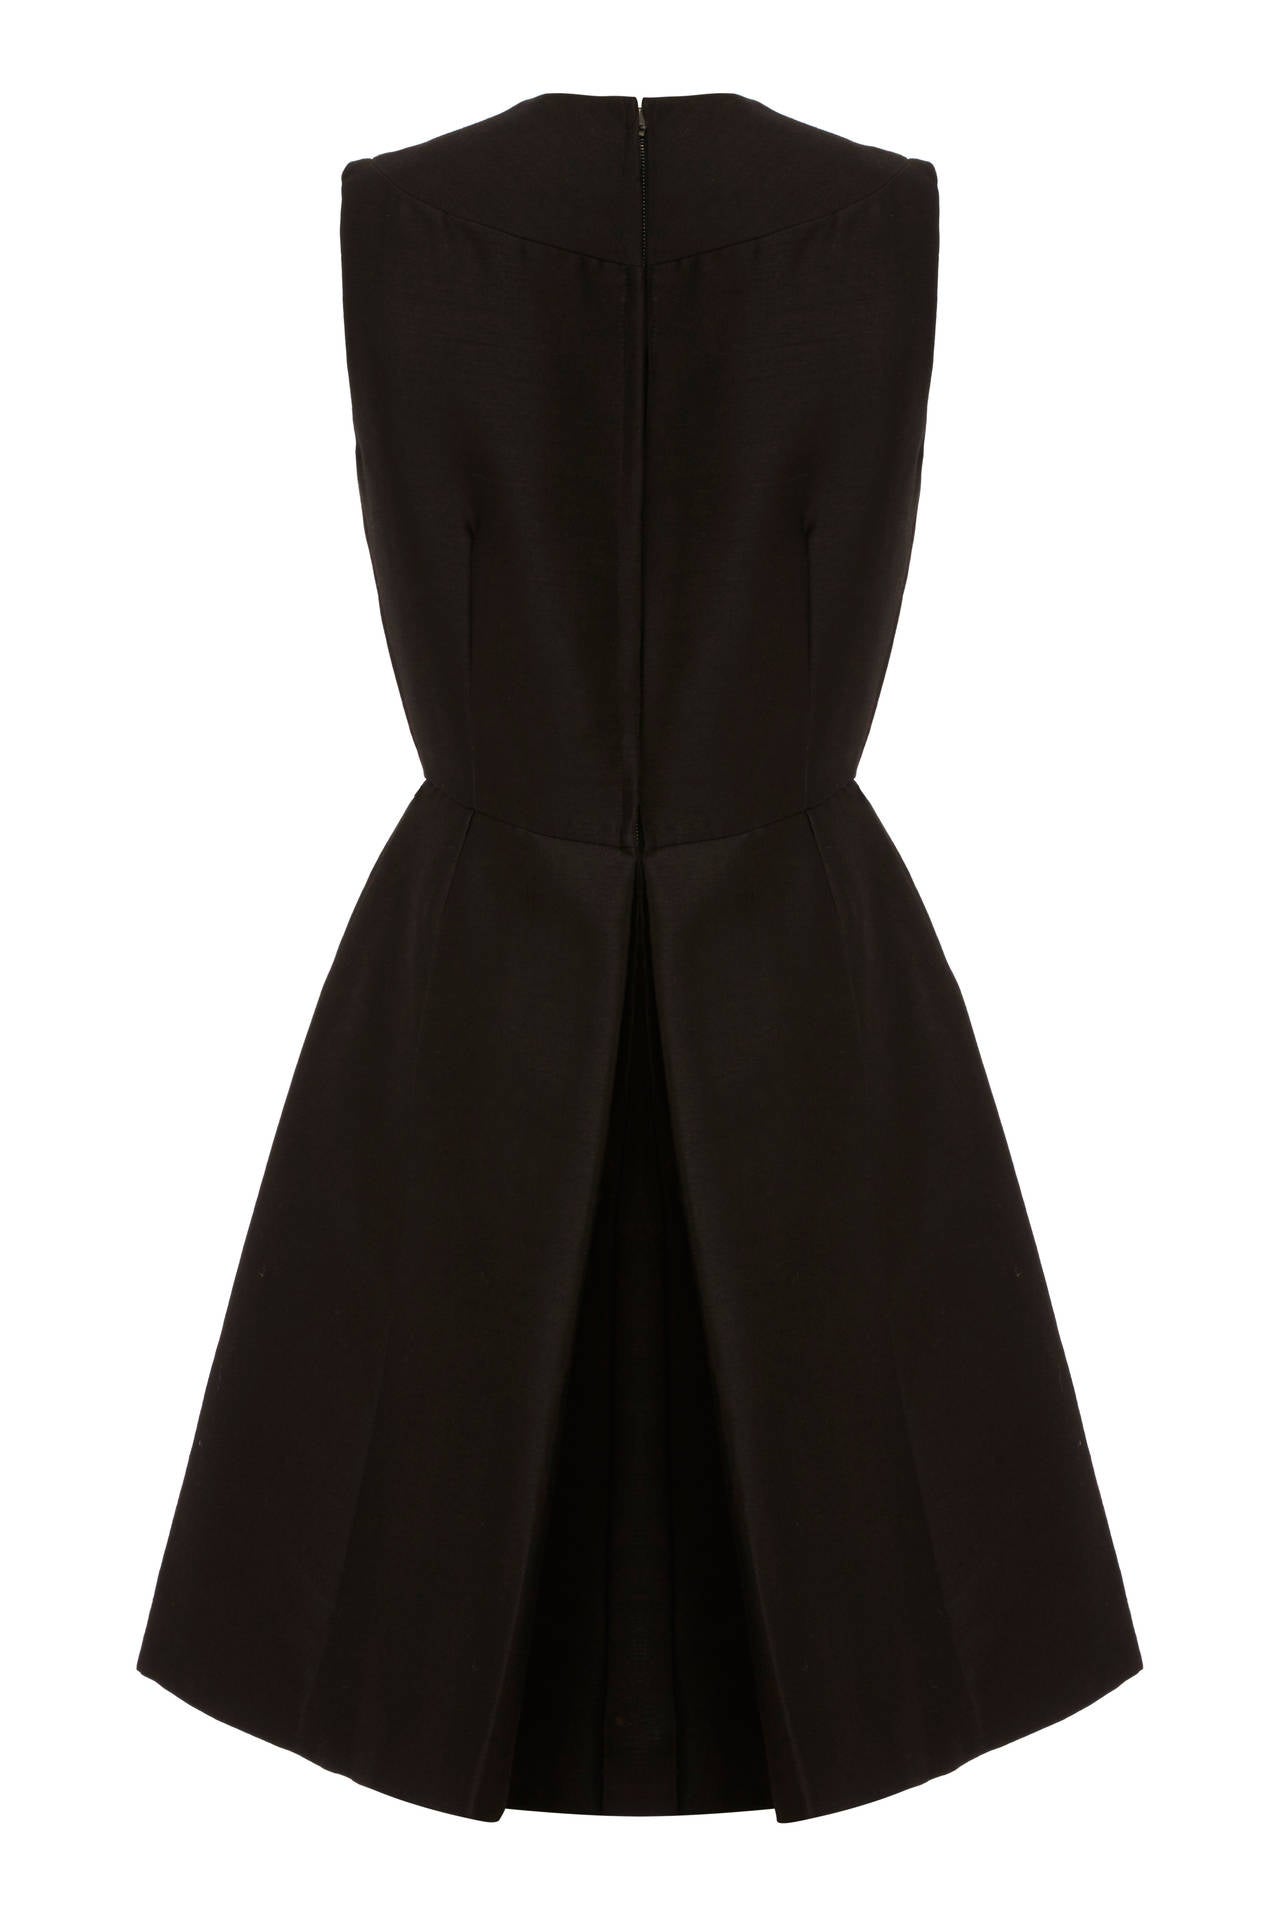 1960s I. Magnin Black Silk Dress For Sale at 1stdibs